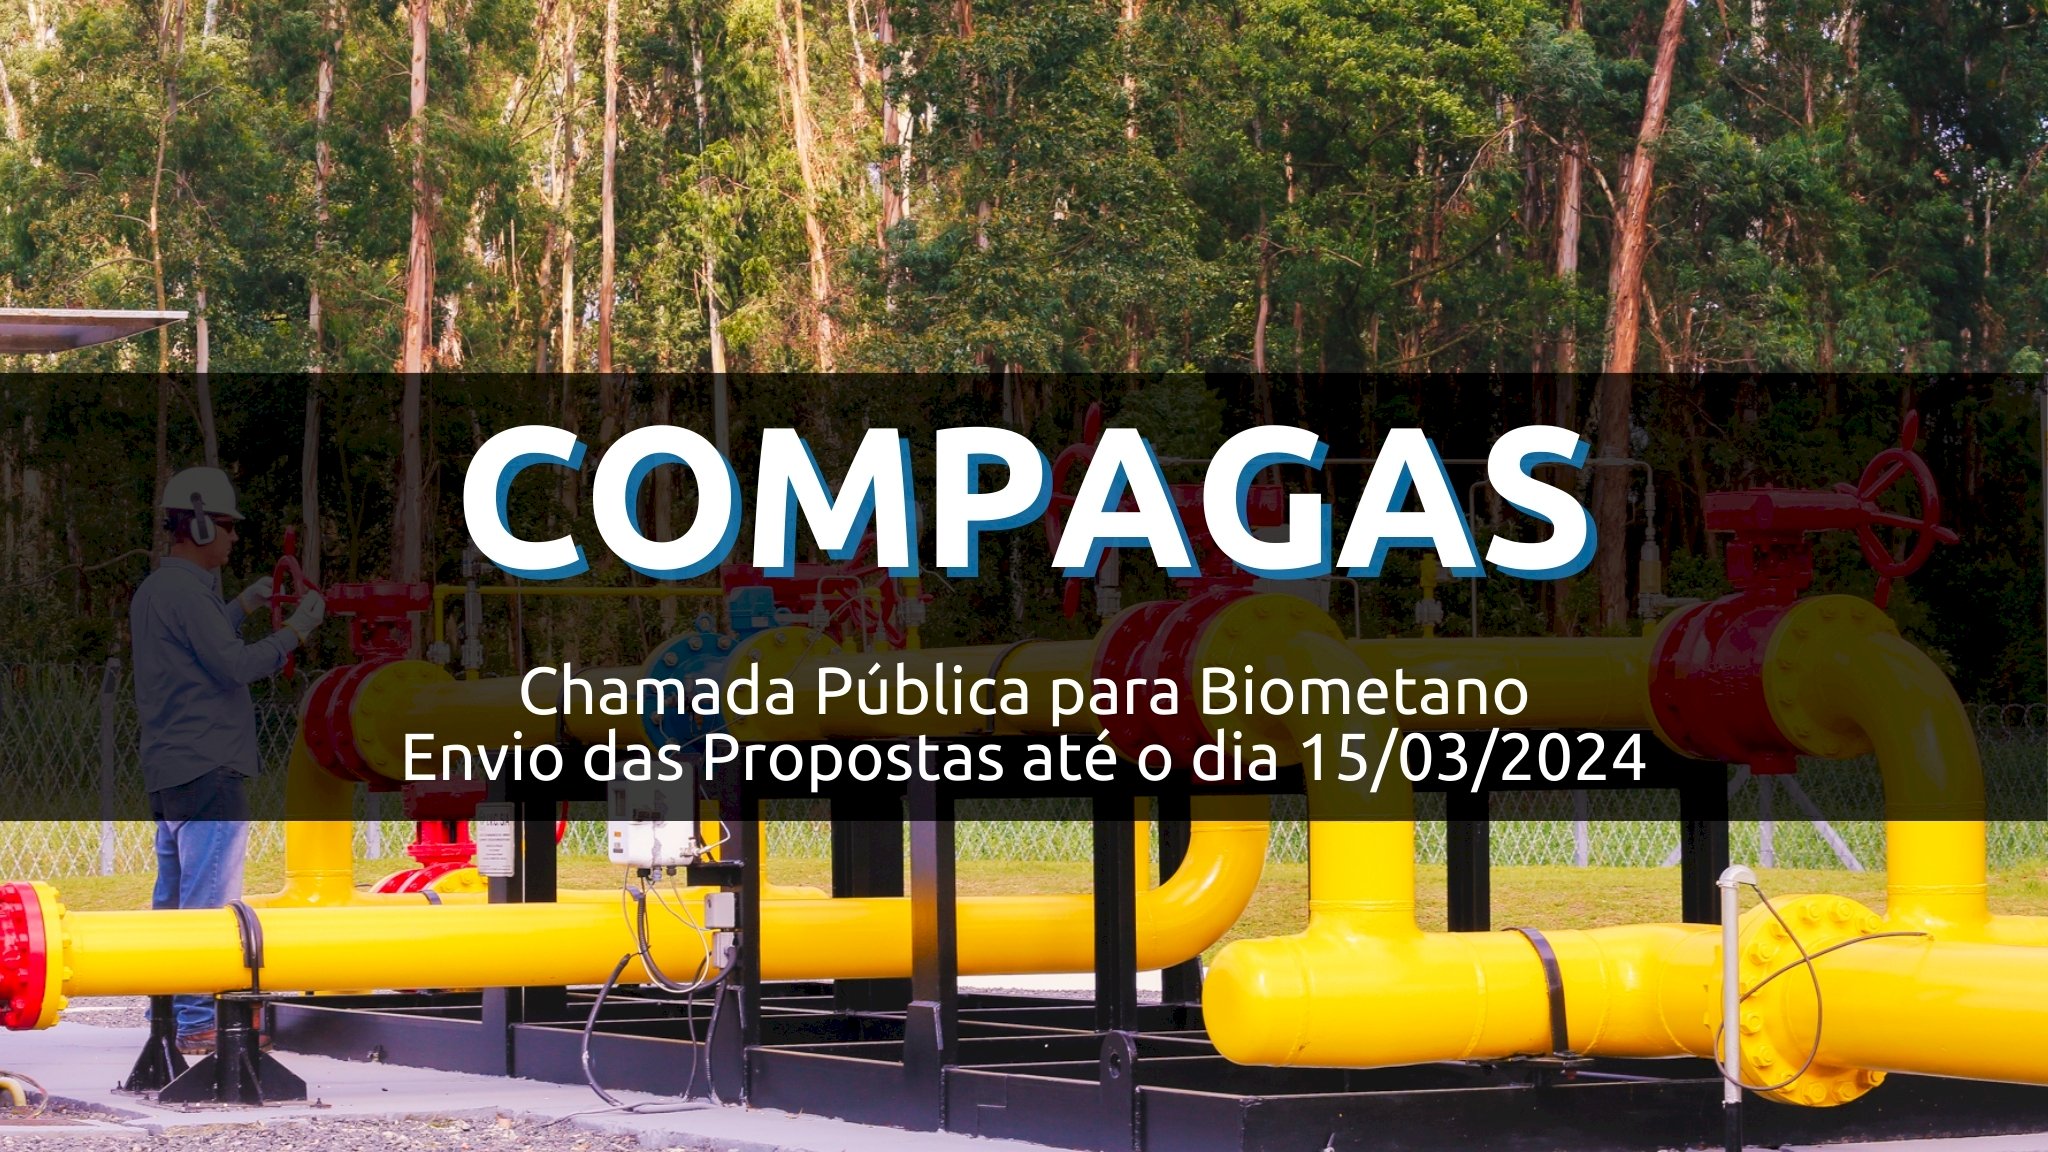 COMPAGAS - Chamada Pública para Biometano